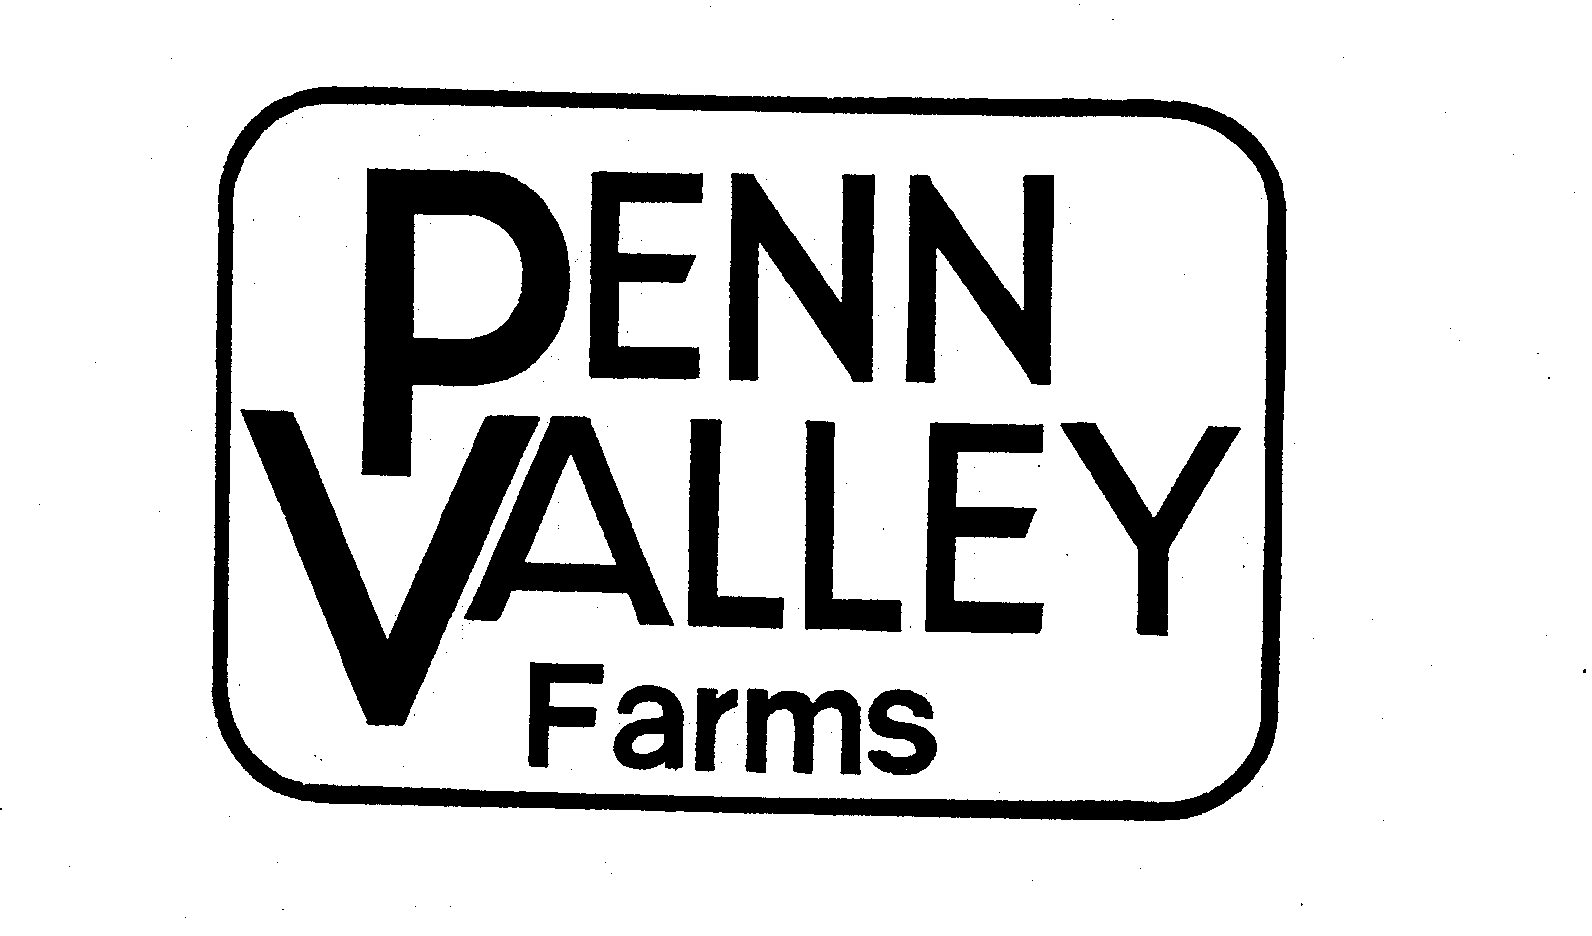  PENN VALLEY FARMS